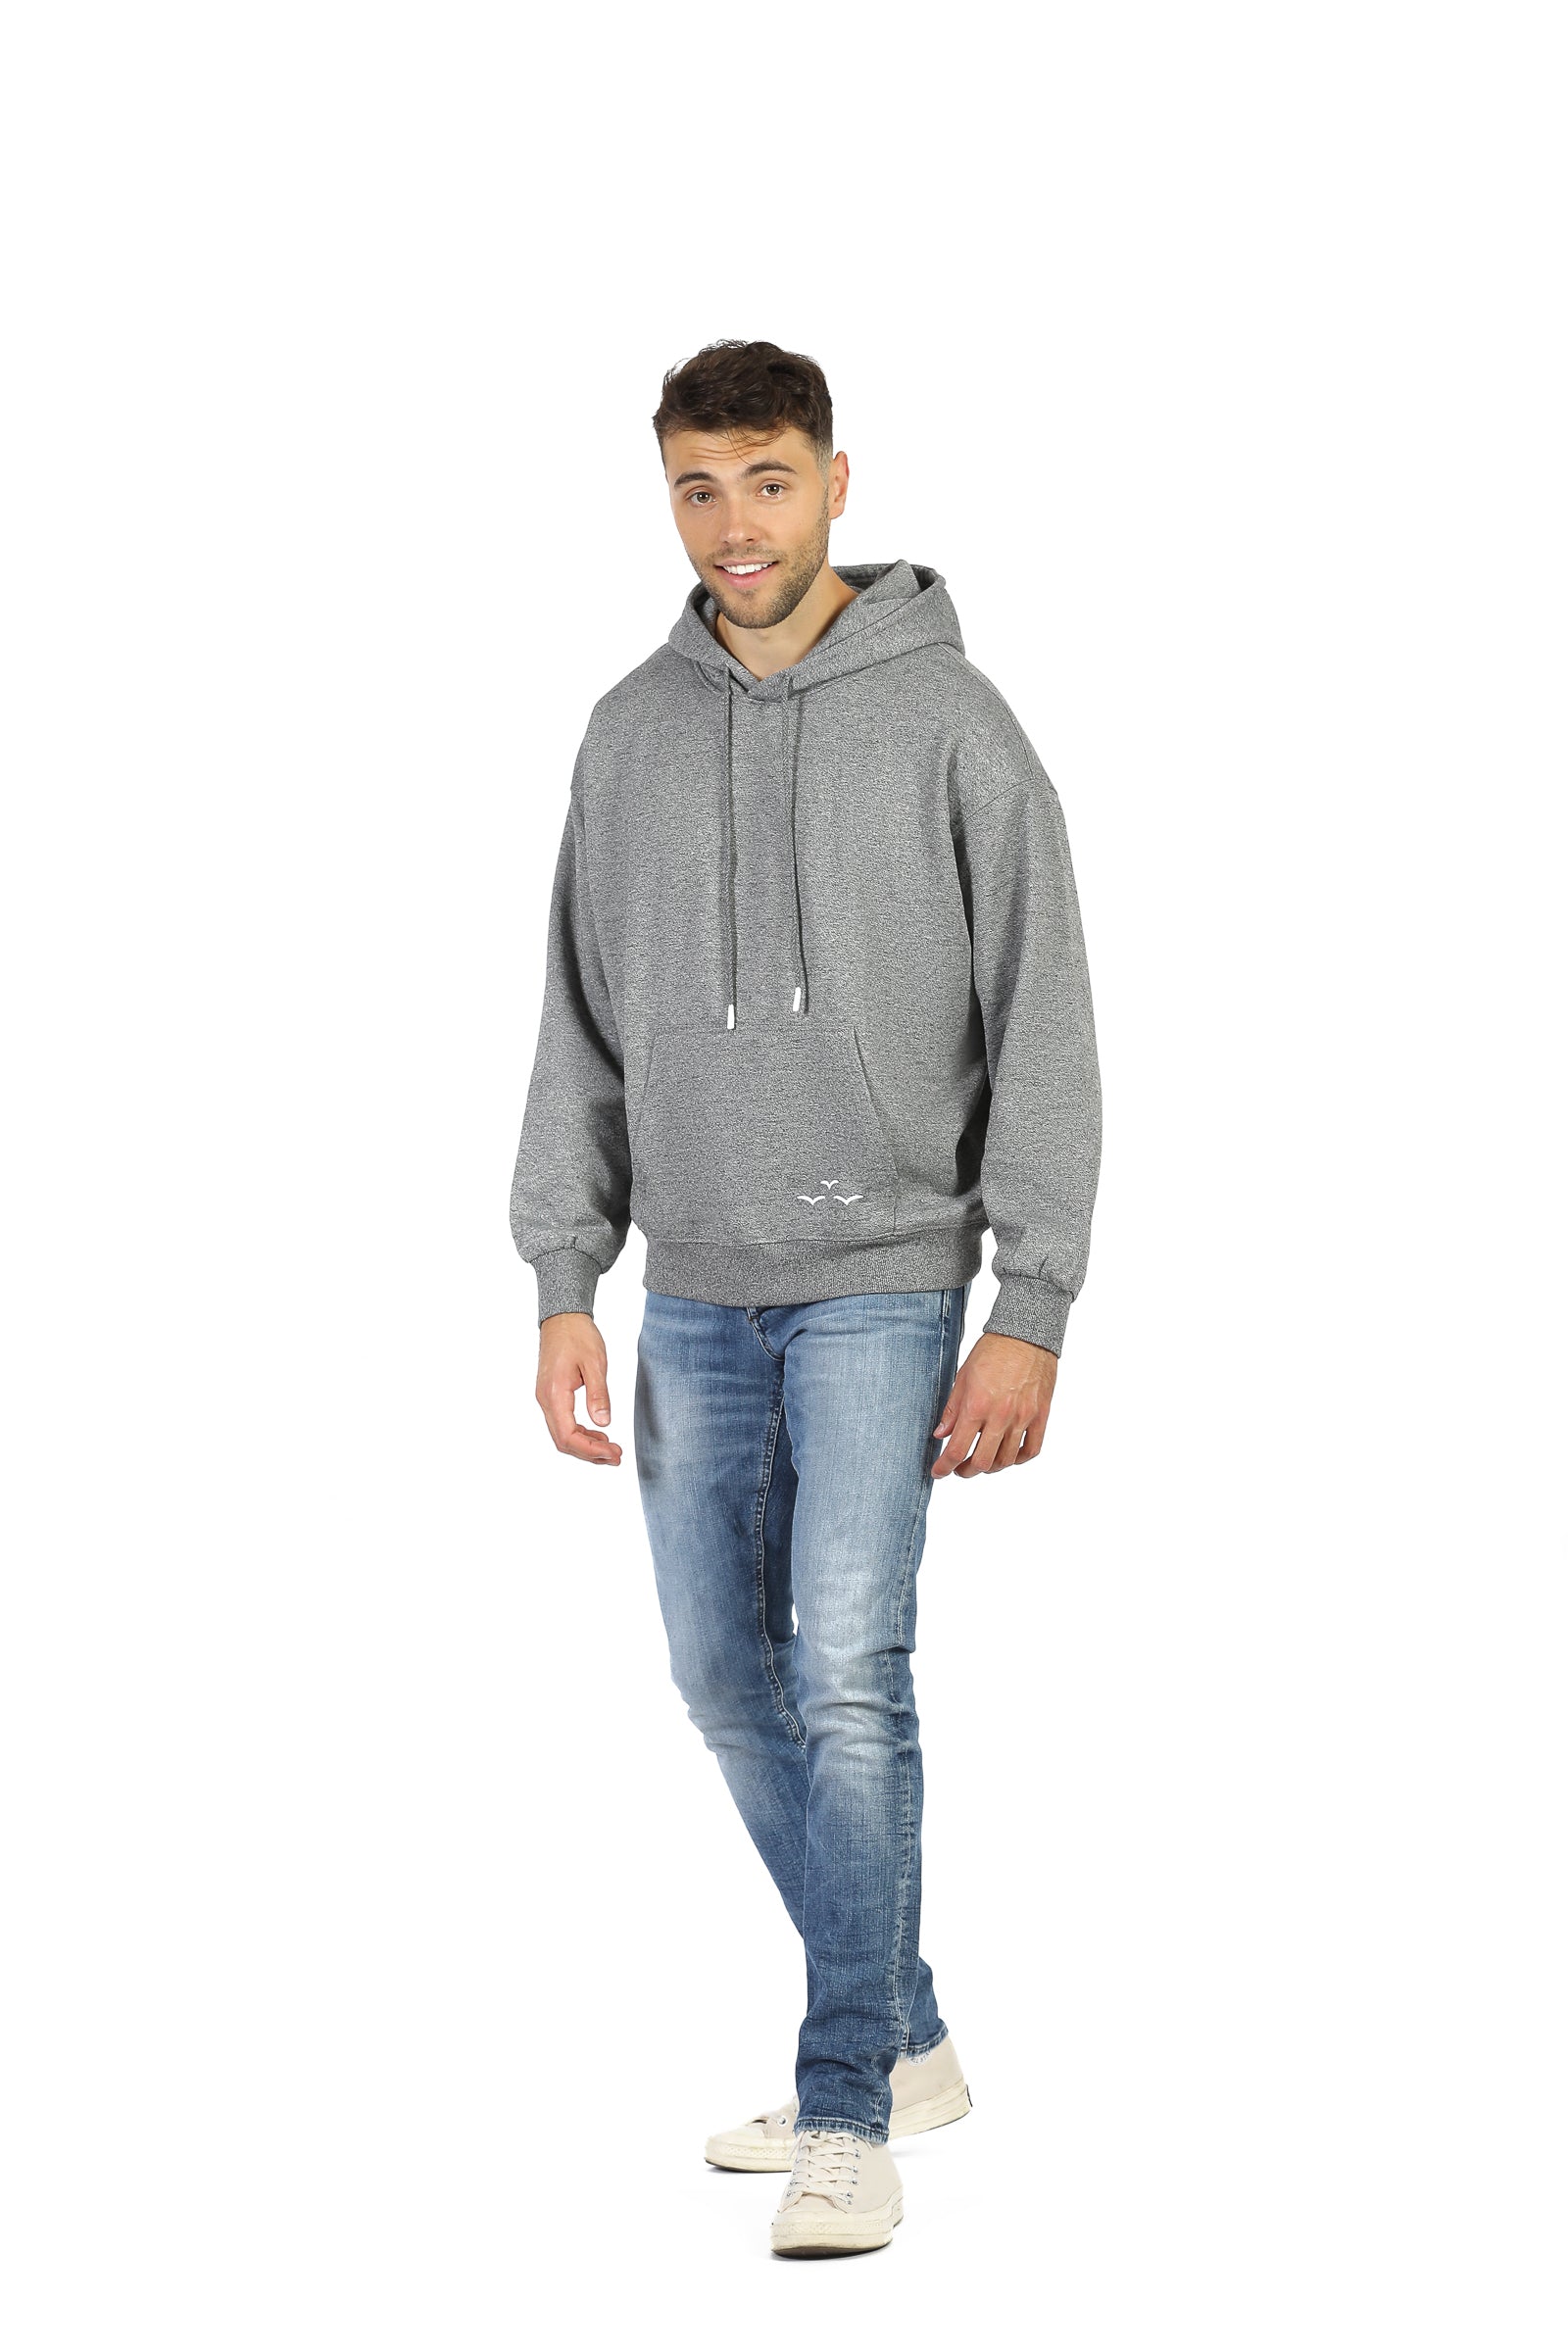 Men’s premium fleece relaxed hoodie in granite